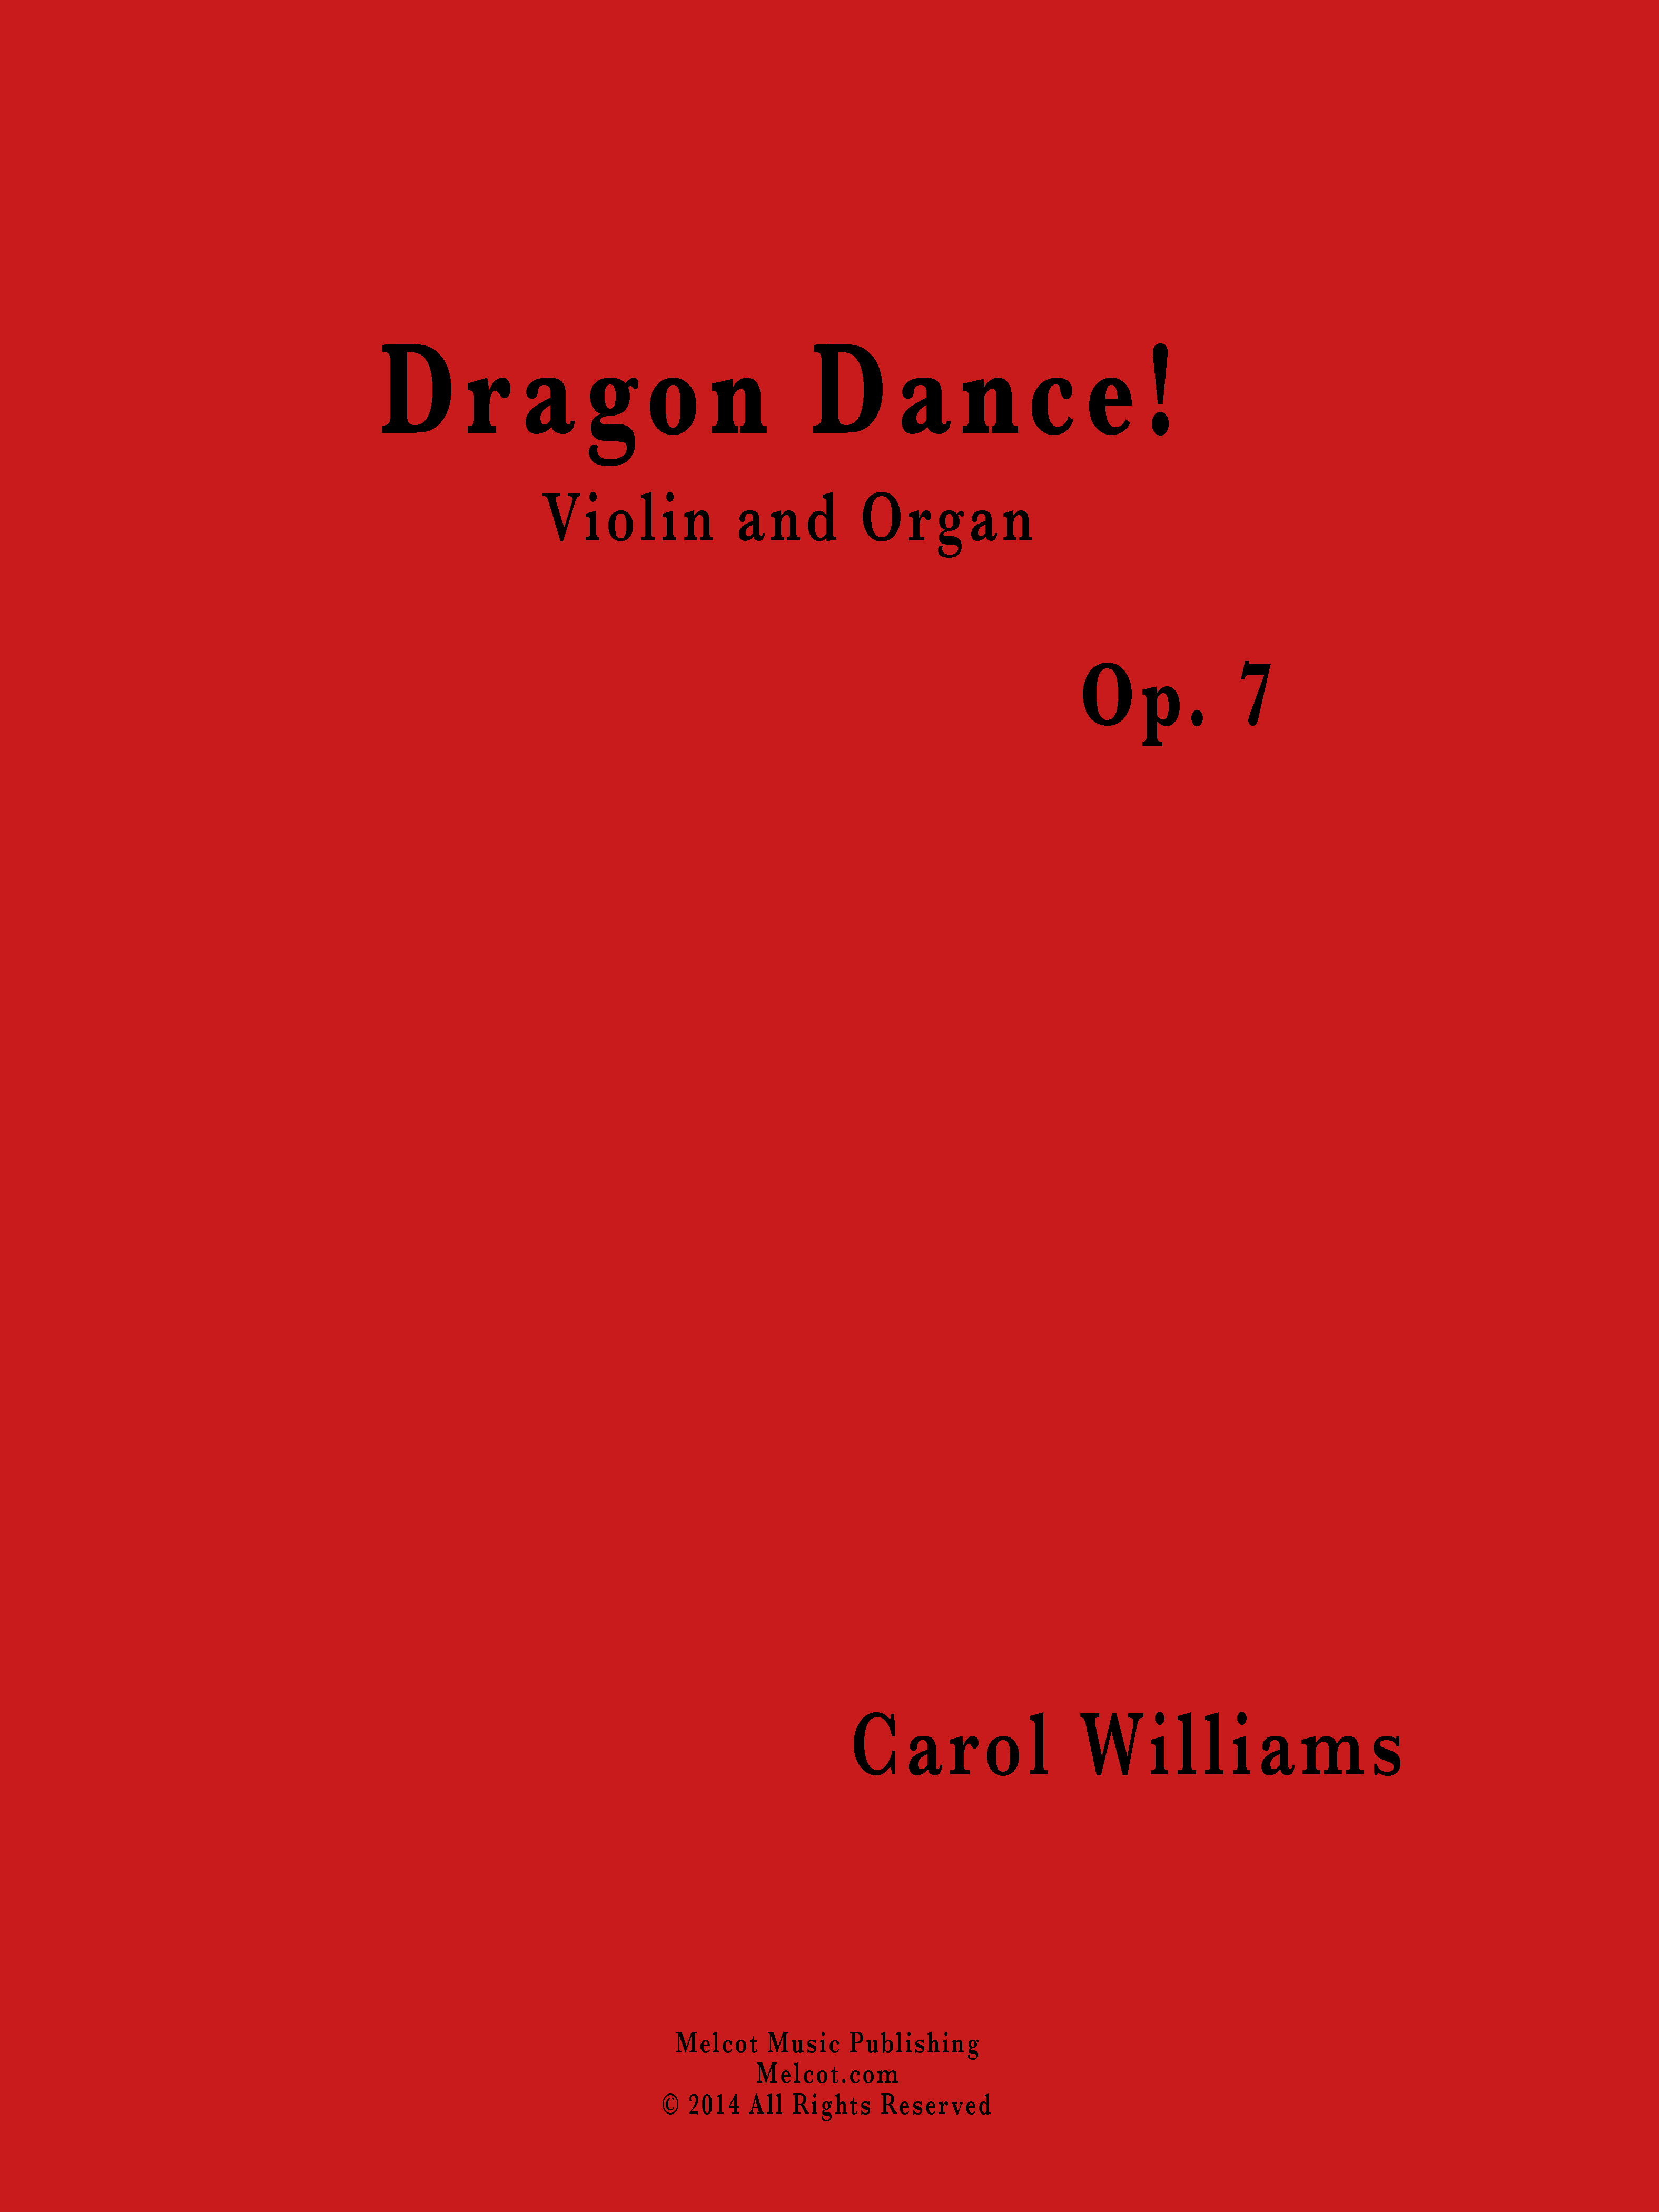 Dragon Dance! by Carol
                                Williams